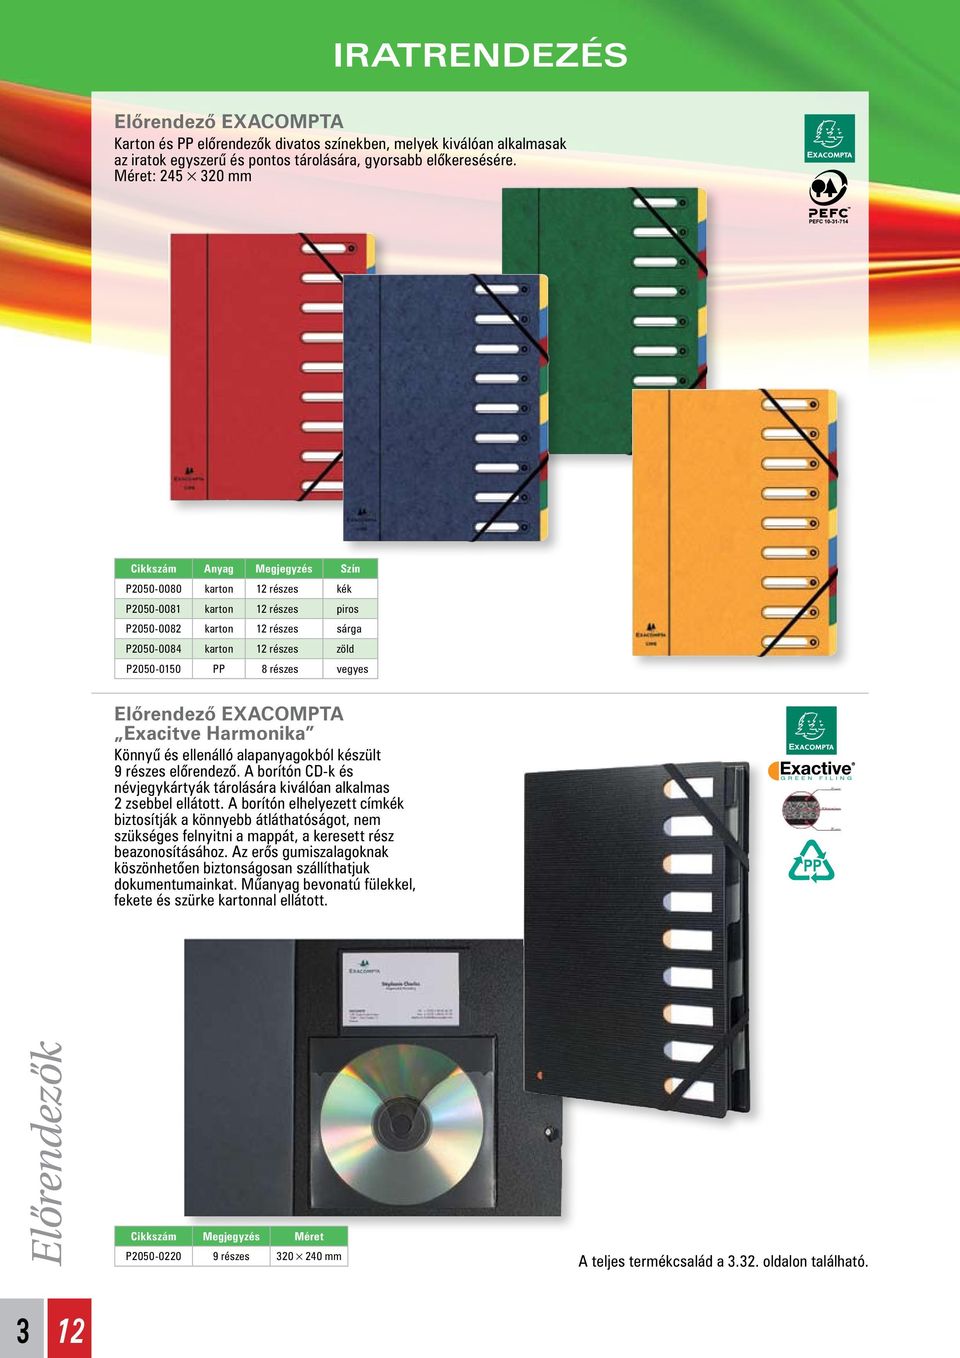 vegyes Elôrendezô EXACOMPTA Exacitve Harmonika Könnyû és ellenálló alapanyagokból készült 9 részes elôrendezô. A borítón CD-k és névjegykártyák tárolására kiválóan alkalmas 2 zsebbel ellátott.